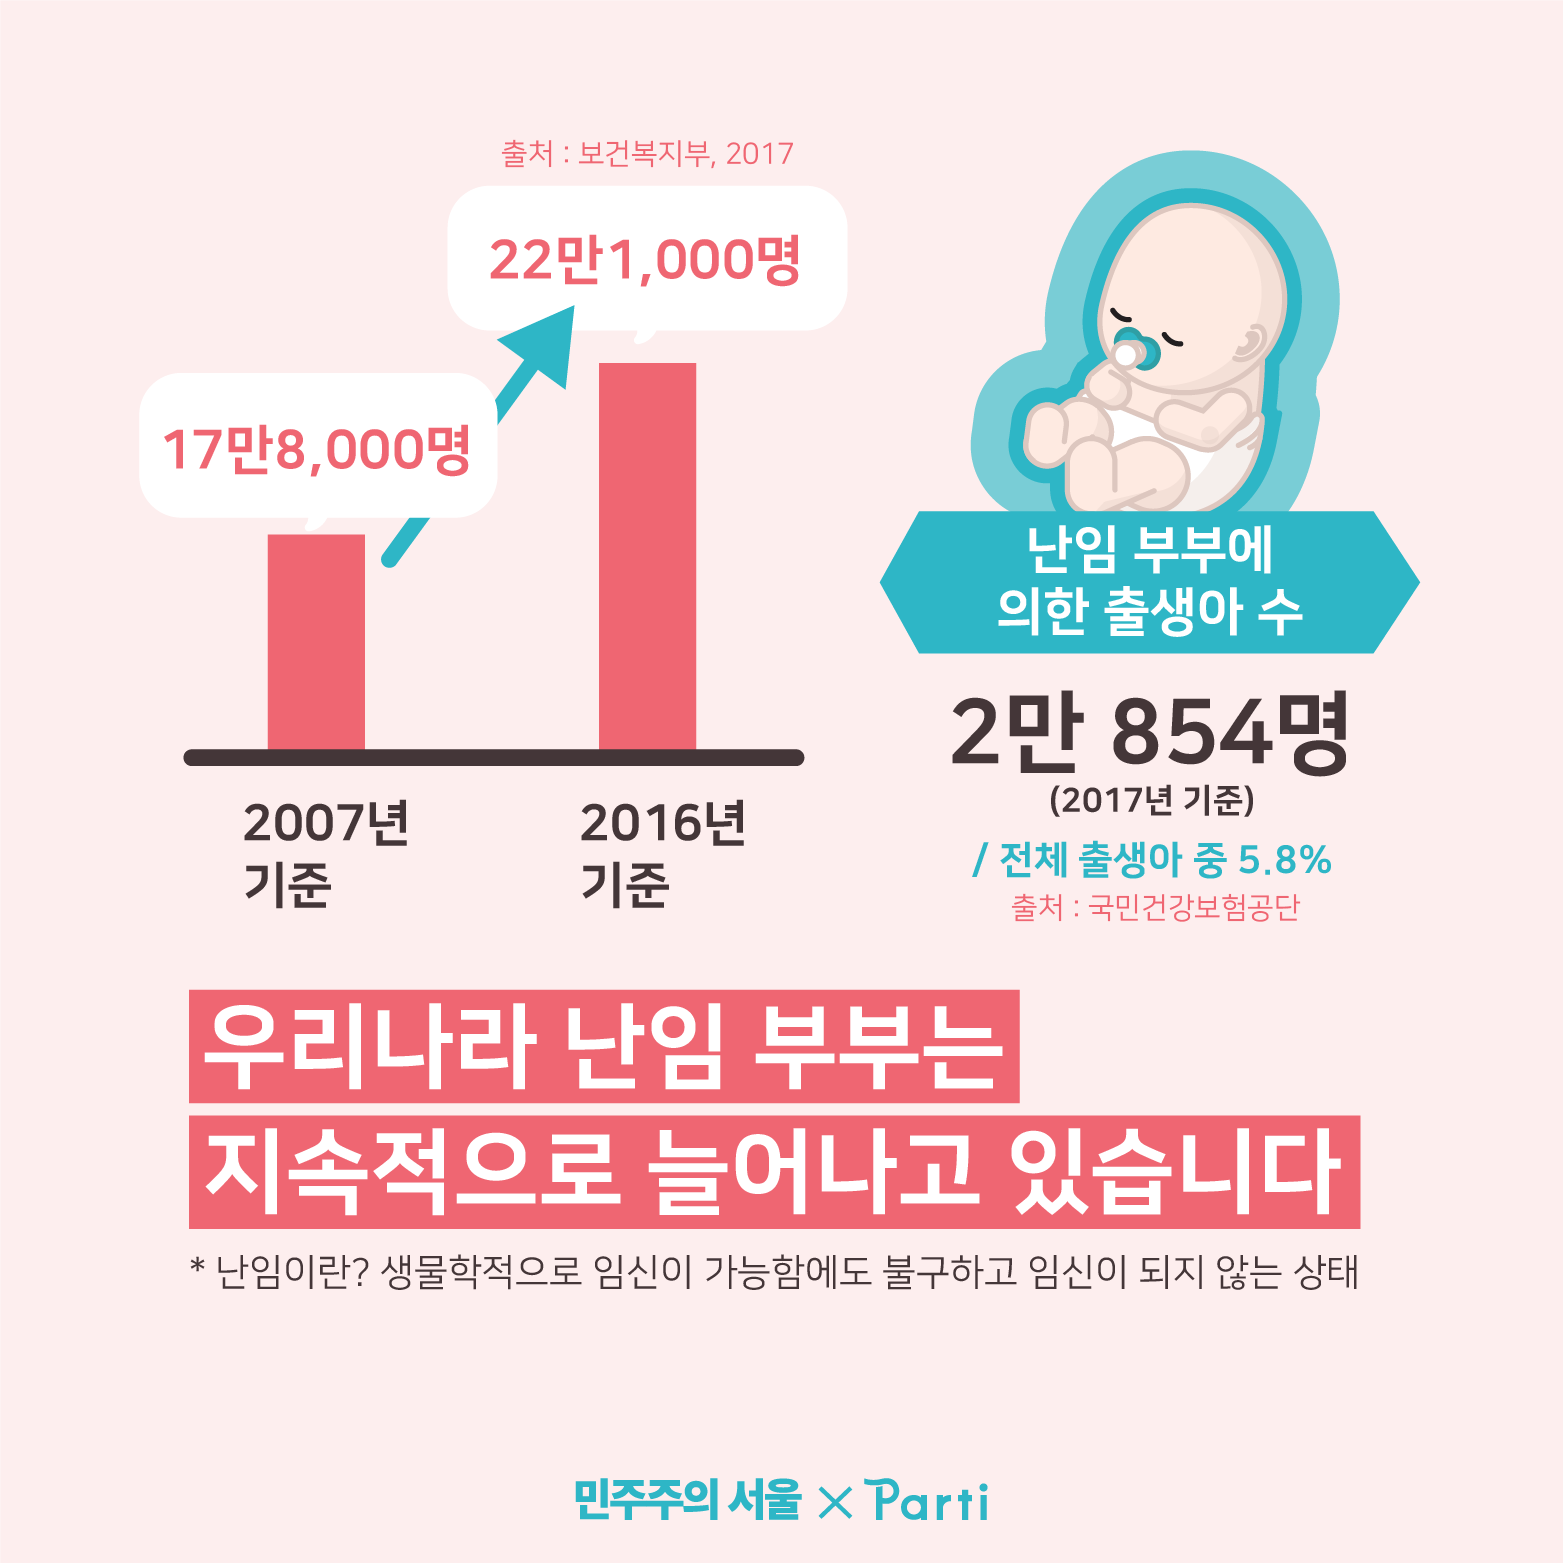 보건복지부(2017) 자료에 따르면 우리나라 난임 부부는 17만8,000명(2007년 기준)에서 22만1,000명(2016년 기준)으로 지속적으로 늘어나고 있습니다. 난임 부부에 의한 출생아 수는 2만 854명(2017년 기준) 으로 전체 출생아 중 5.8% 차지합니다. (출처 : 국민건강보험공단) 난임이란? 생물학적으로 임신이 가능한 상태임에도 불구하고 임신이 되지 않는 상태를 말합니다.